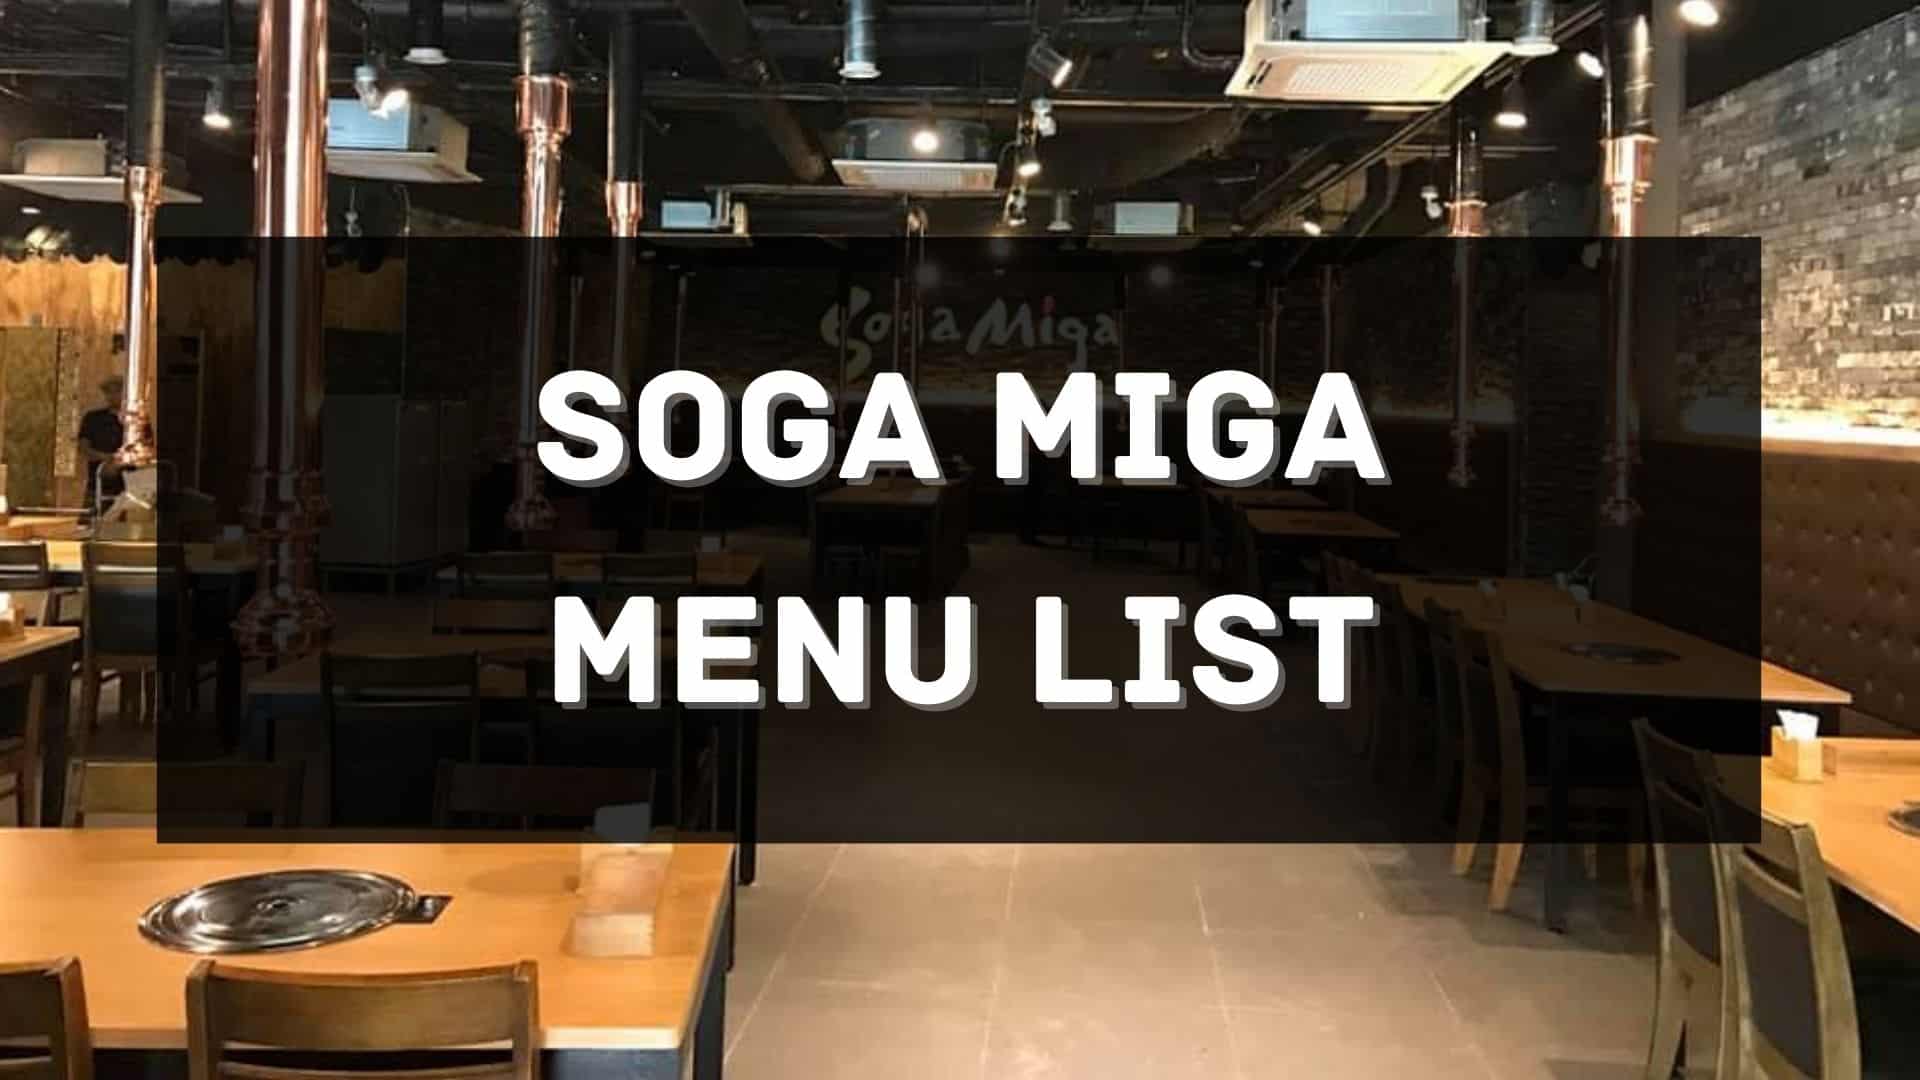 soga miga menu prices philippines